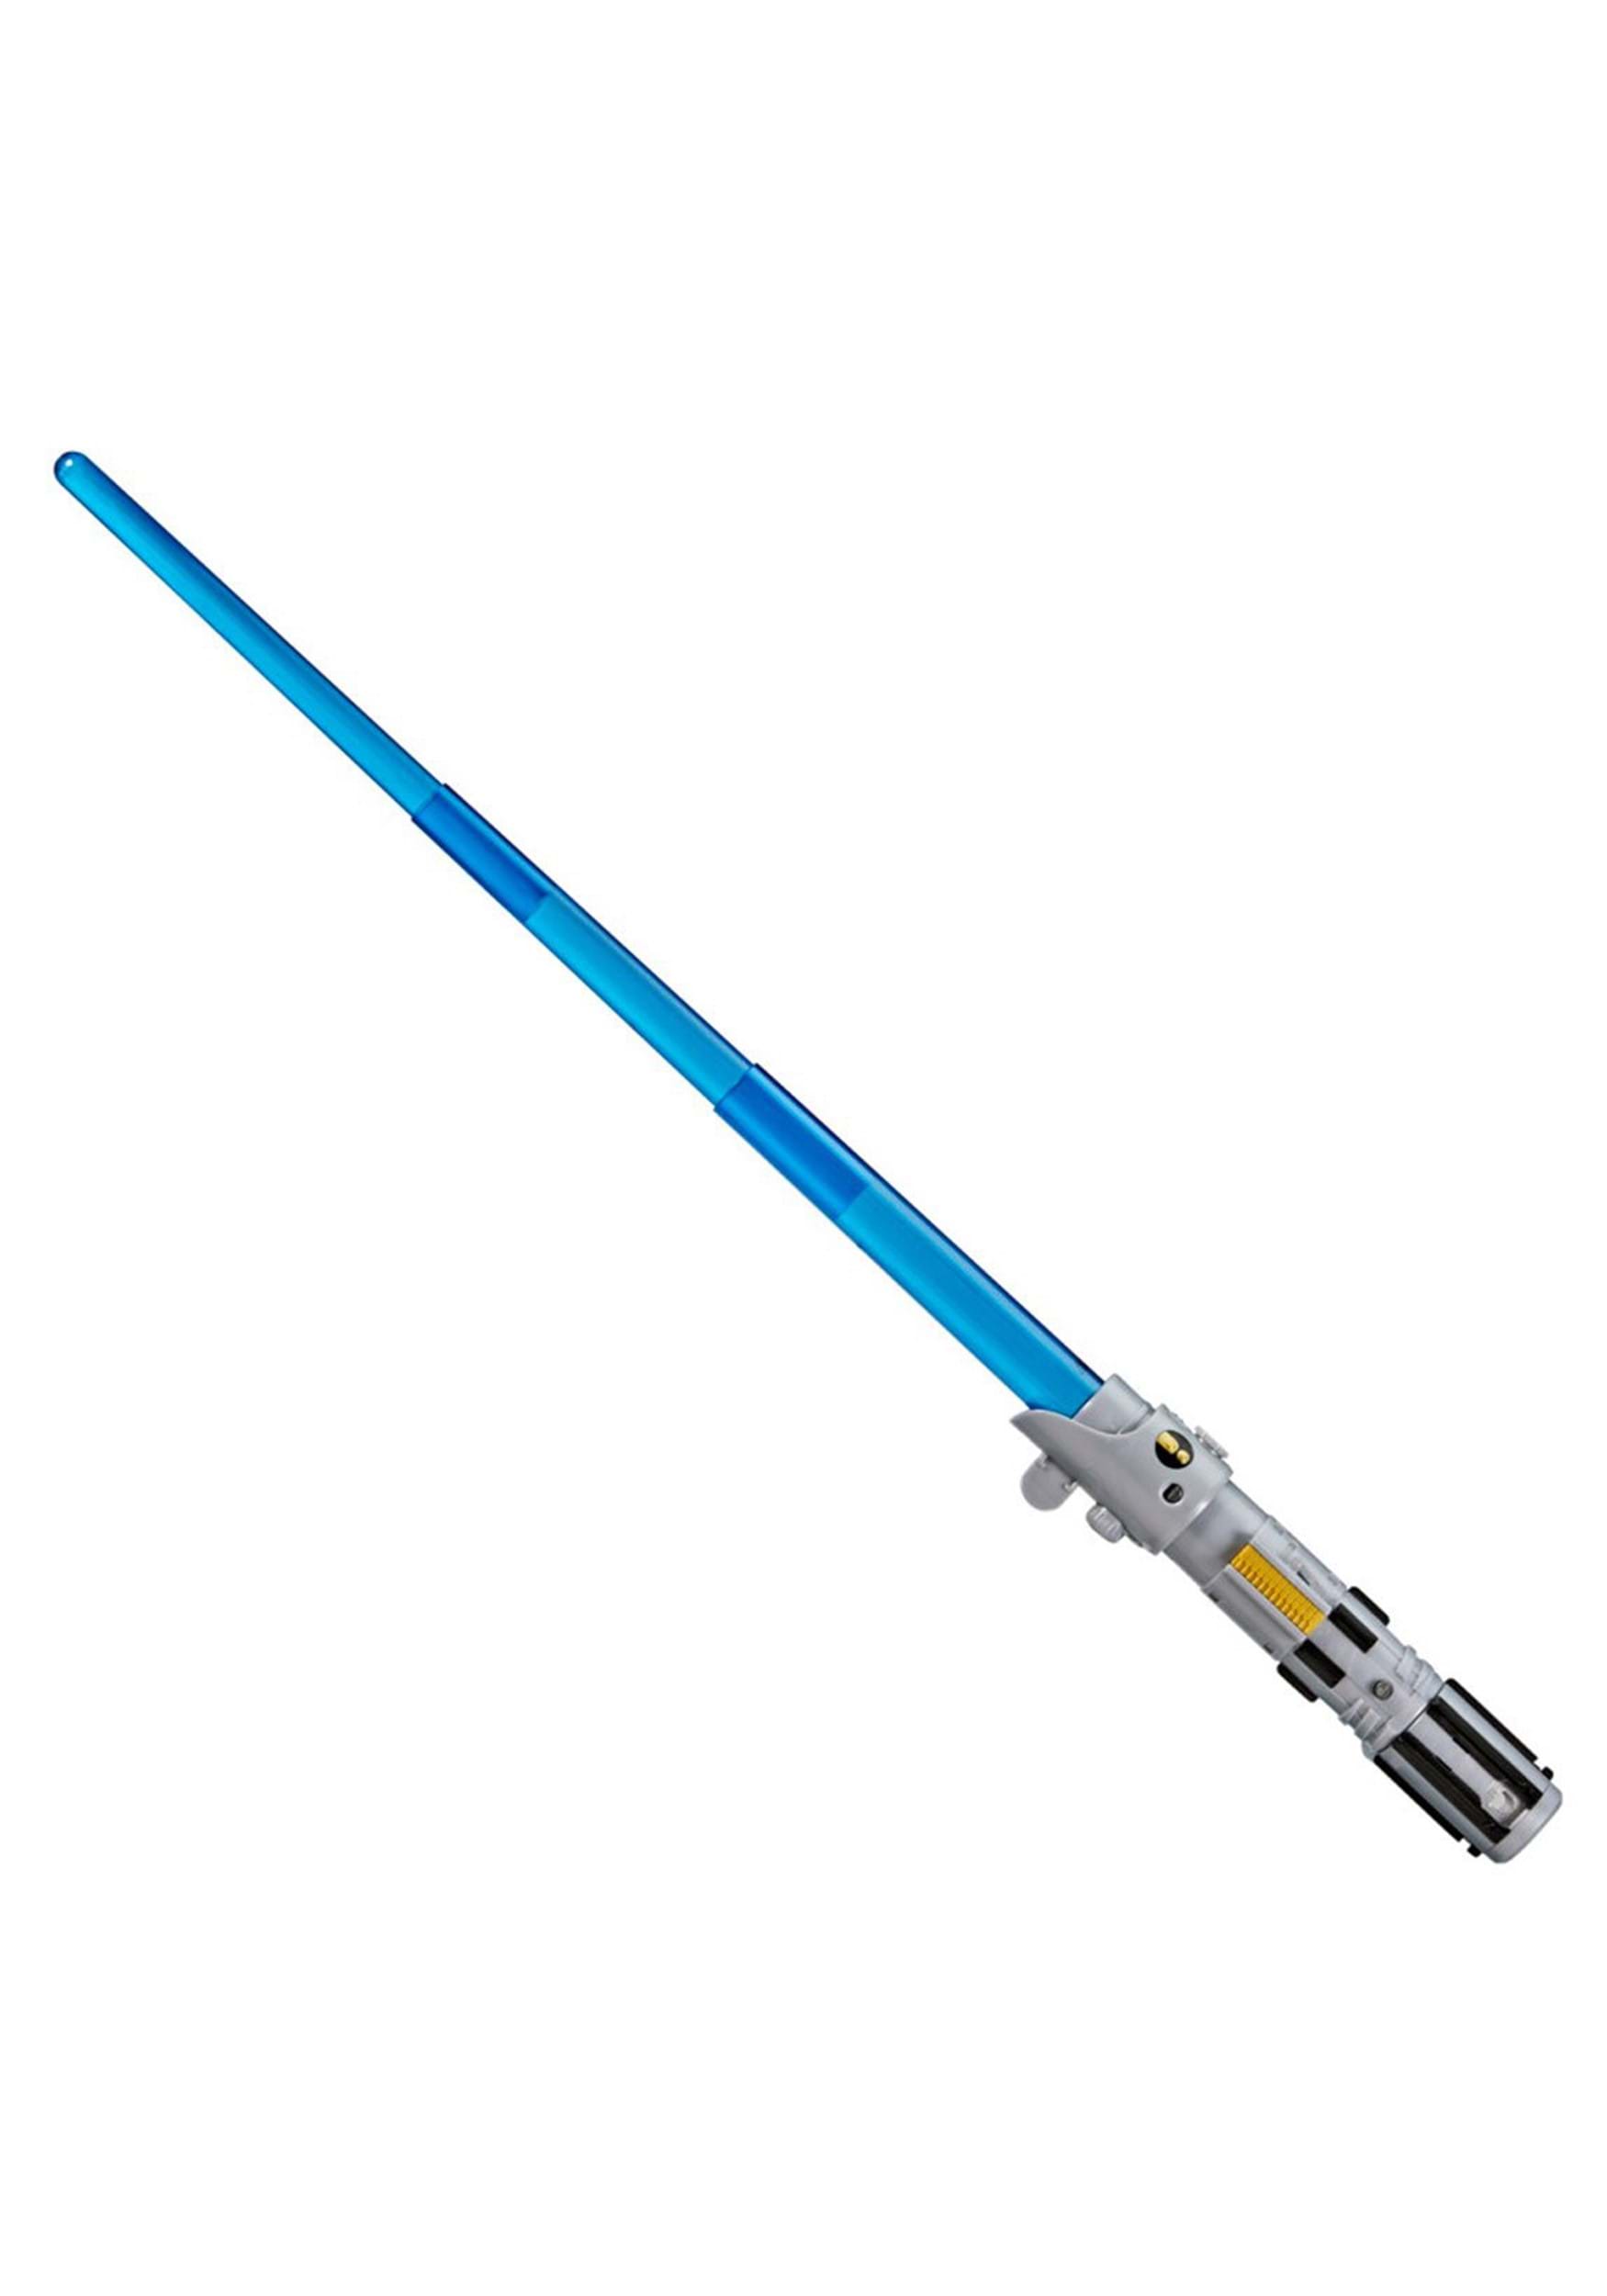 Star Wars Forge Luke Skywalker Electronic Toy Lightsaber